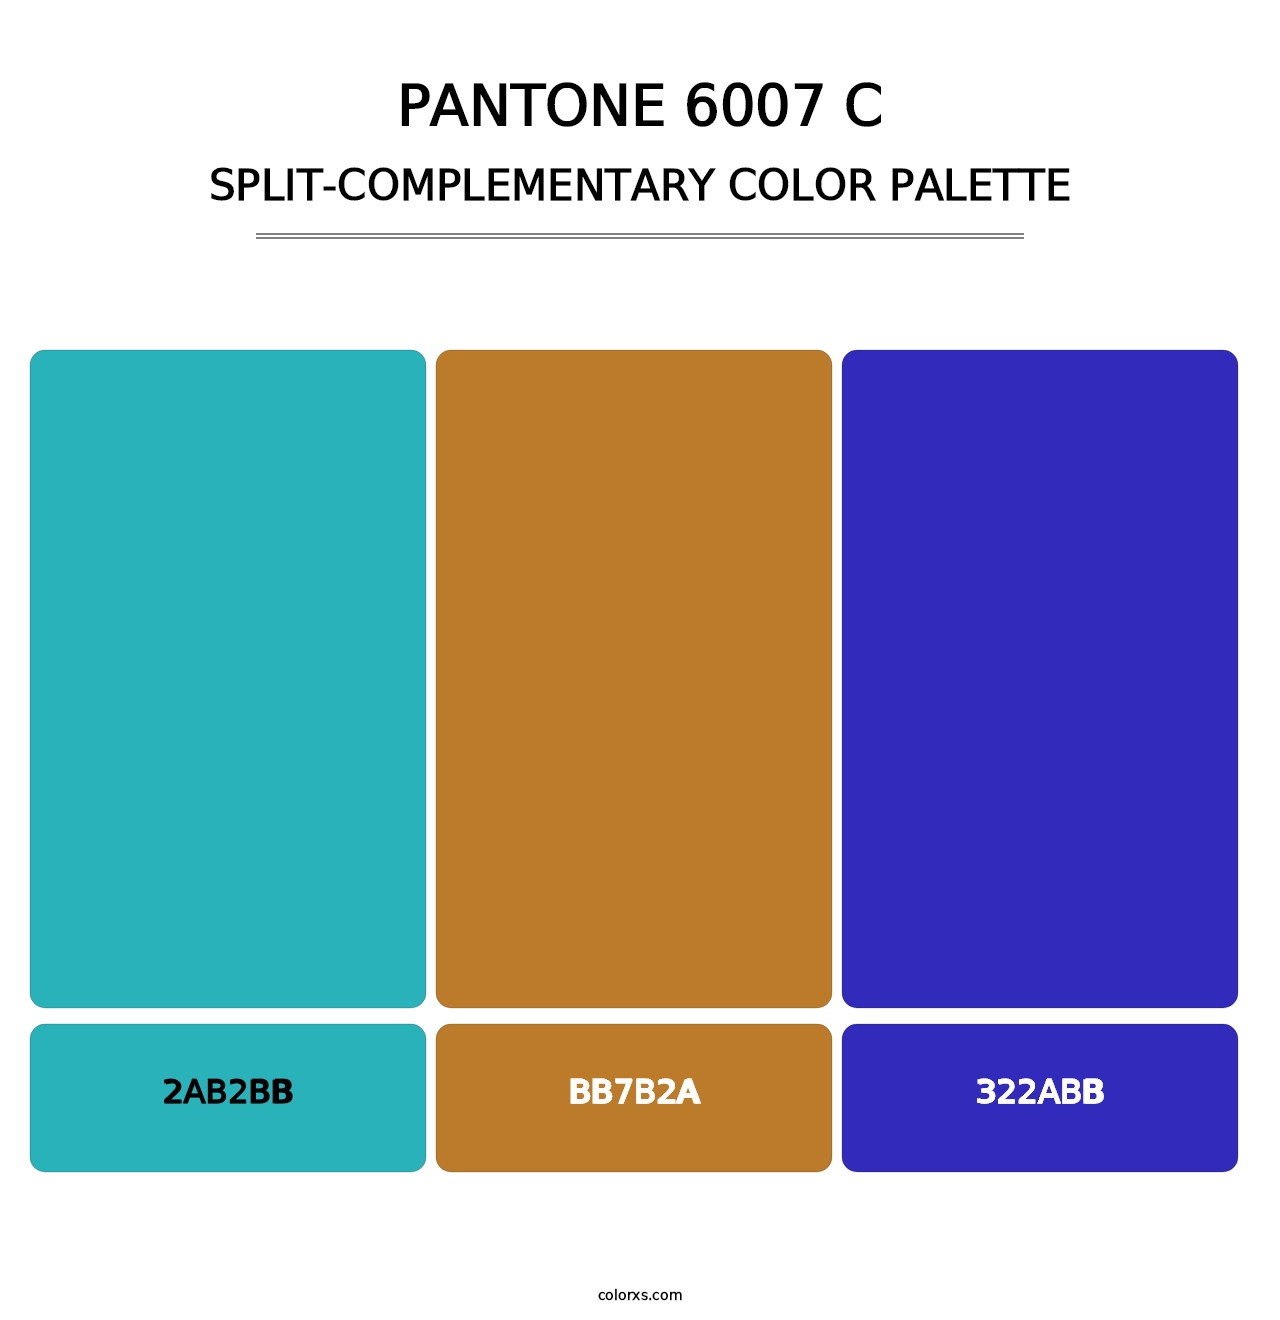 PANTONE 6007 C - Split-Complementary Color Palette